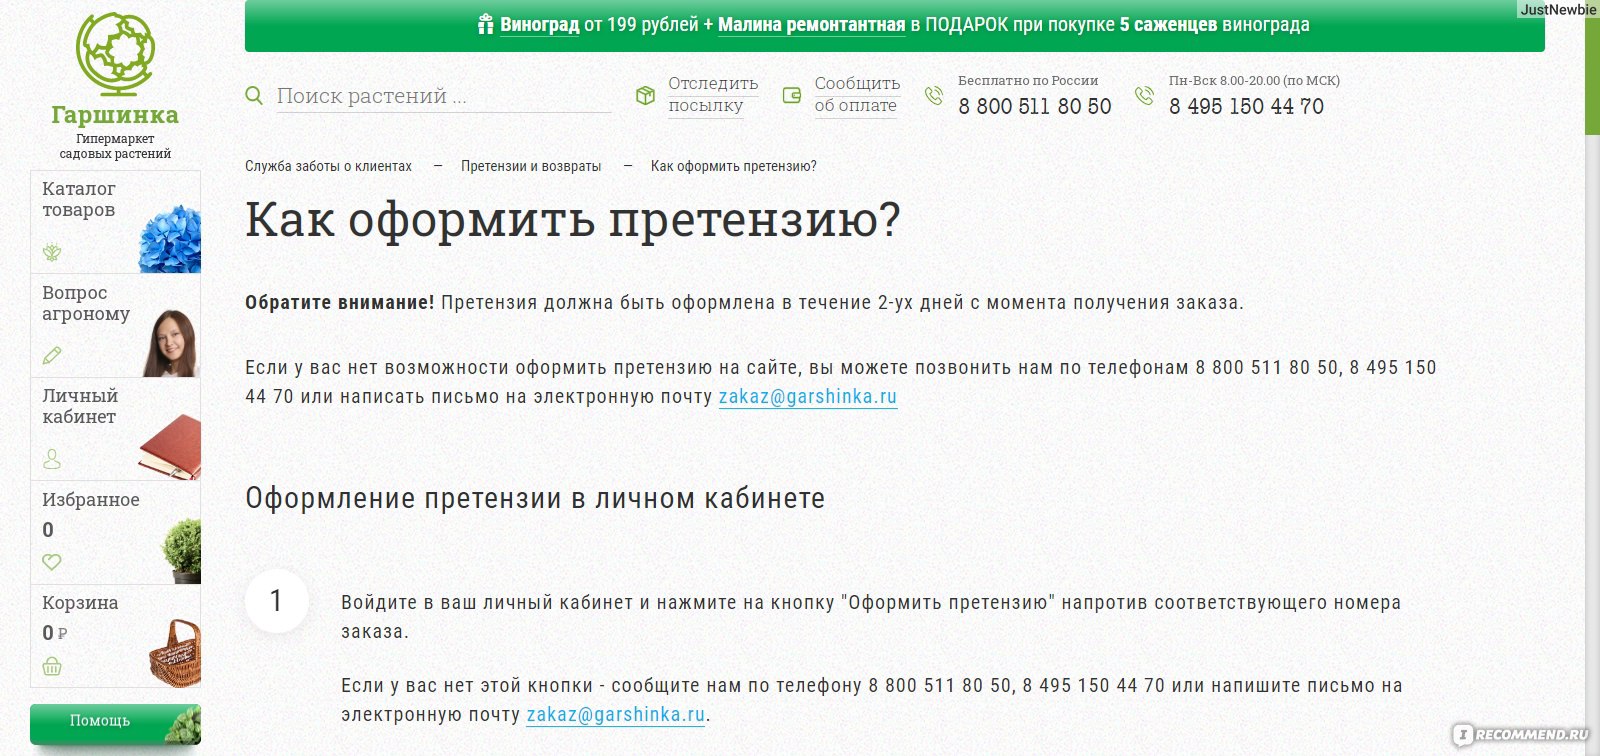 Гаршинка интернет магазин. ТОПАВТО.ру Новосибирск обман или нет.